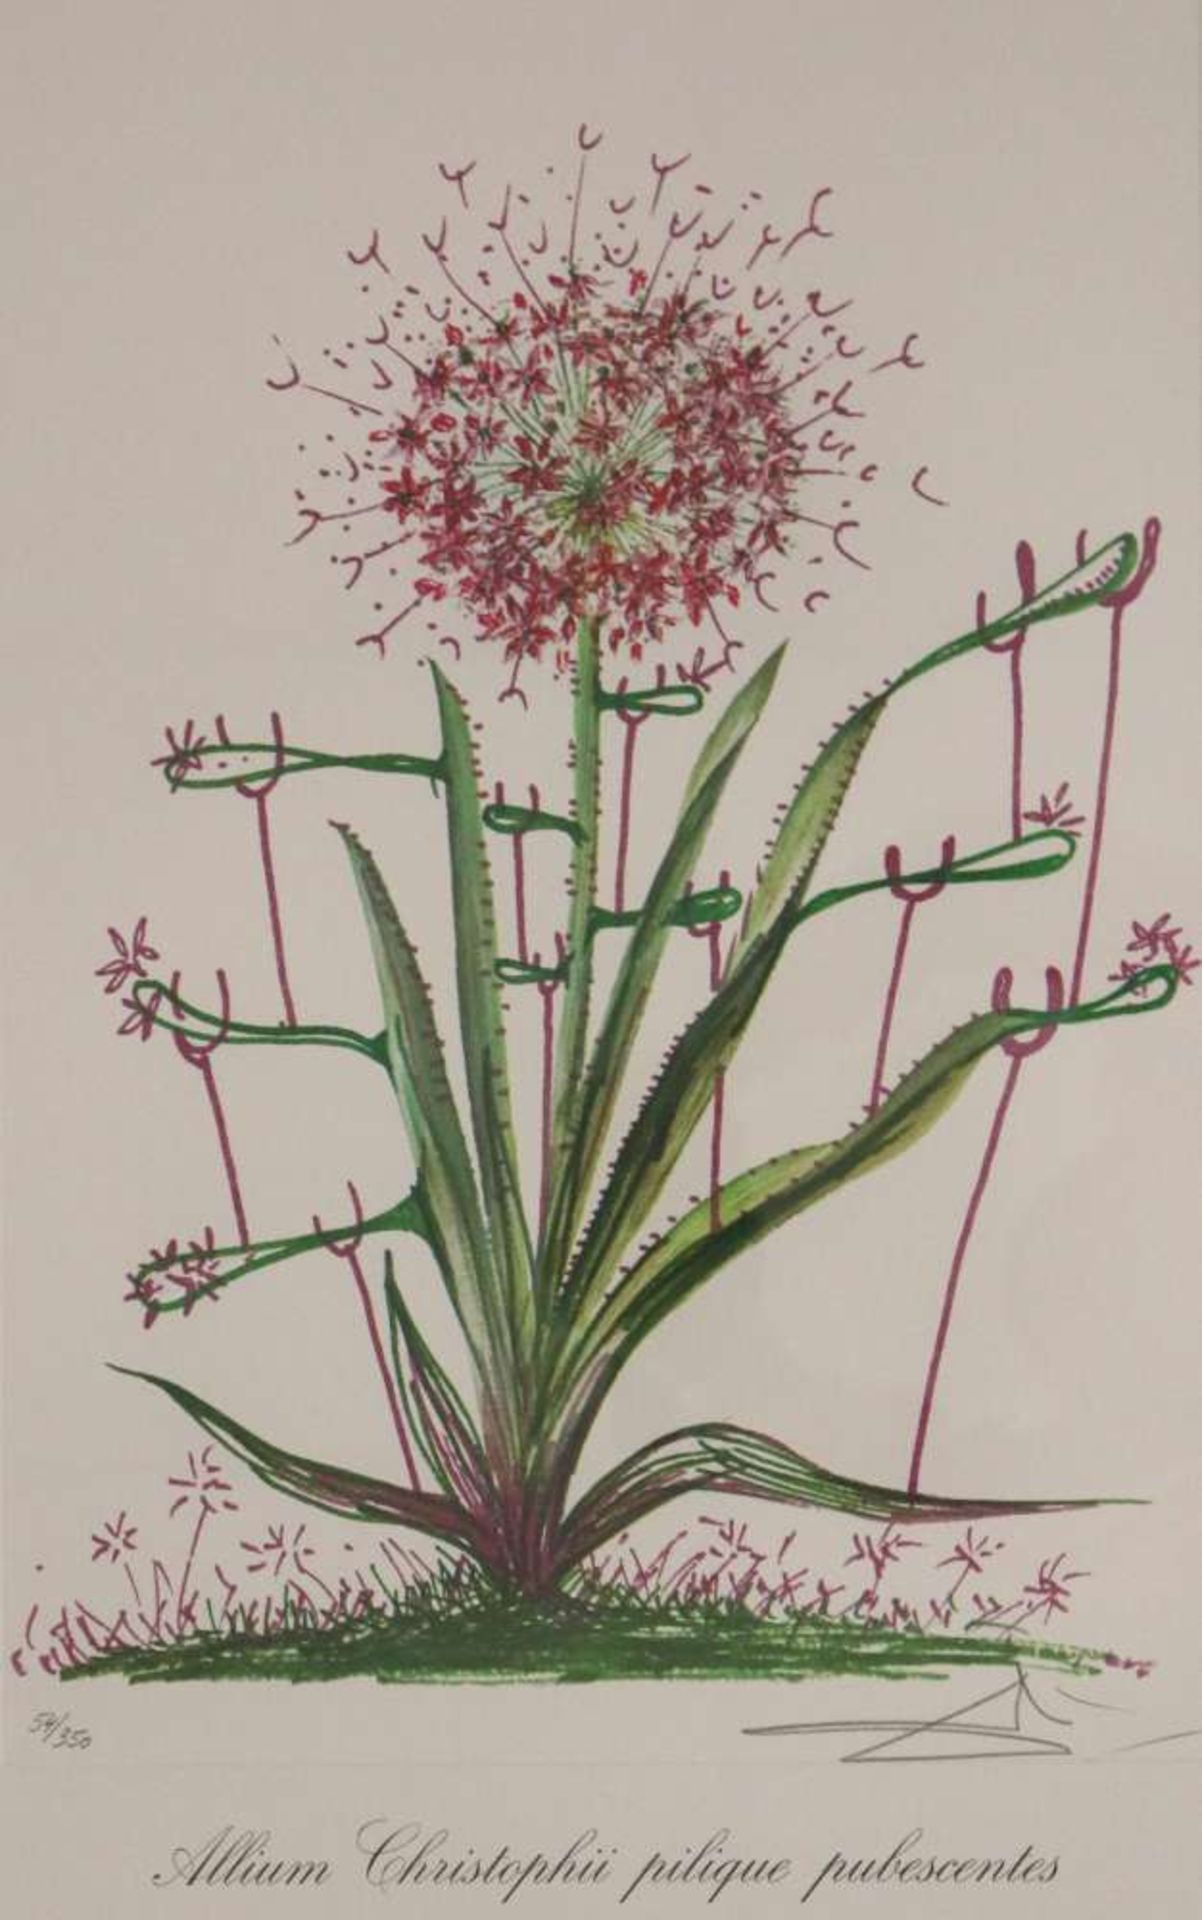 Salvador DALI (1904-1989), ''Allium christophi pilique pubescentes'' aus der Folge ''Surrealistische